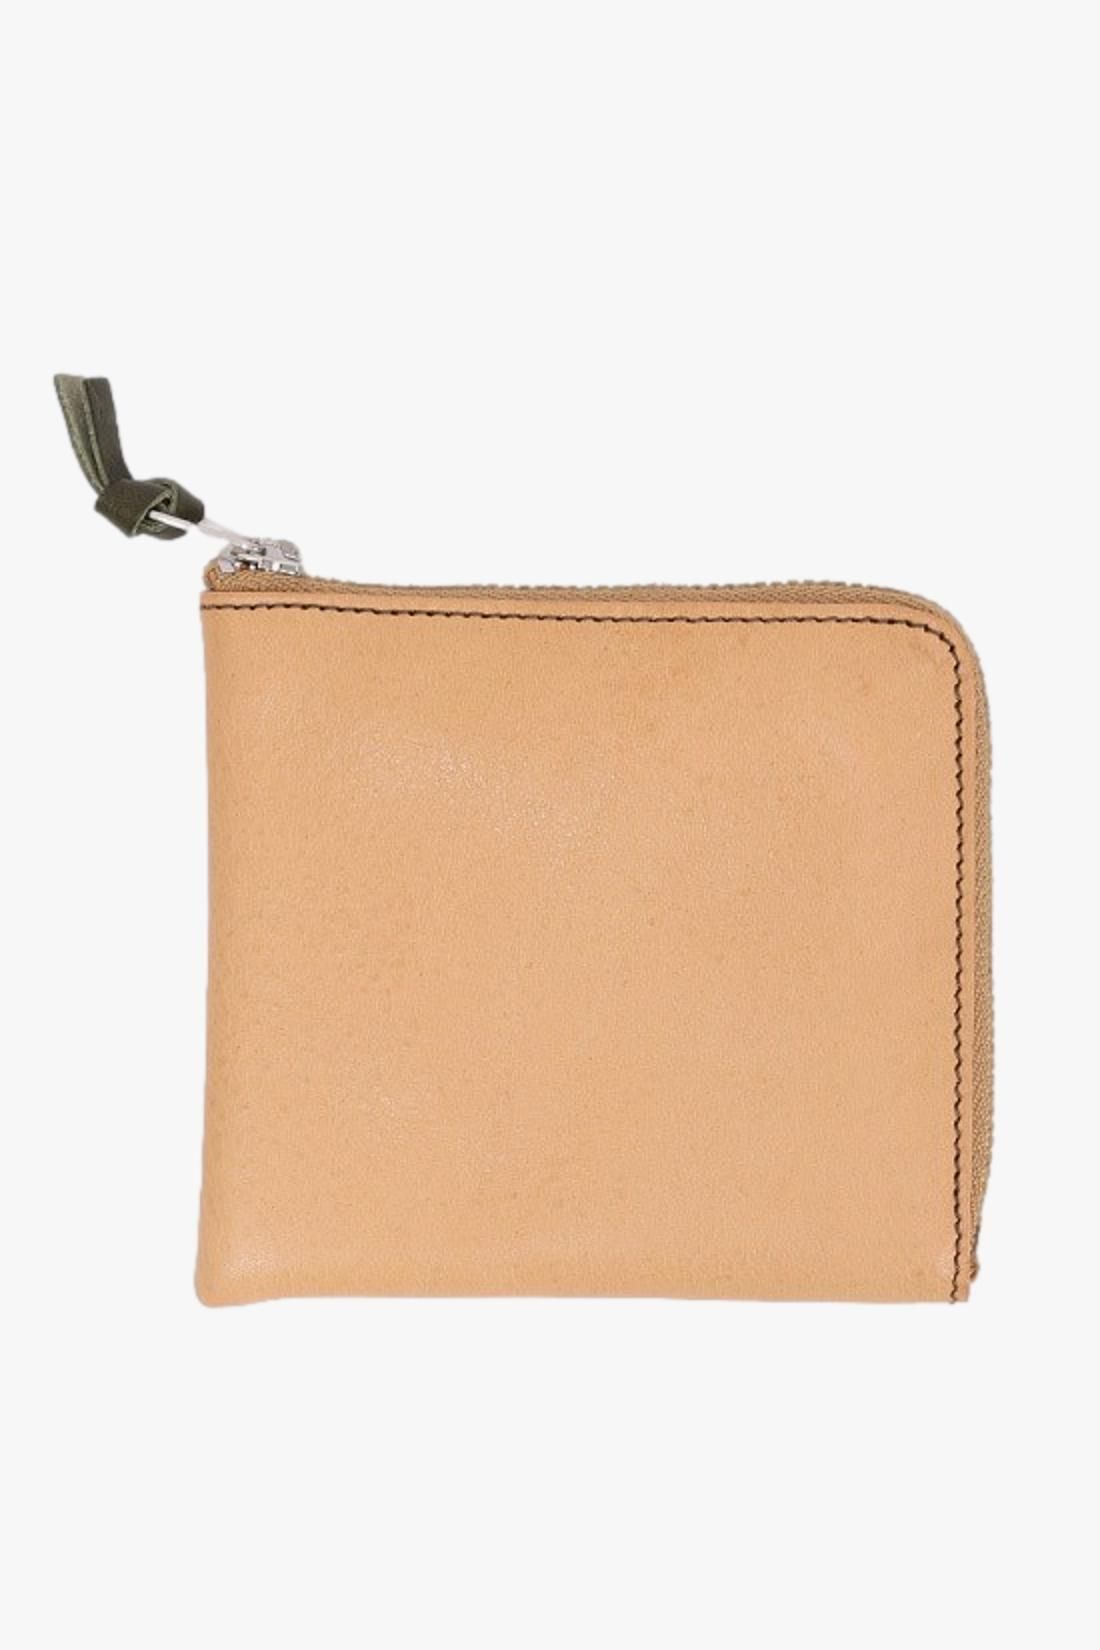 Double zip wallet Tan orange